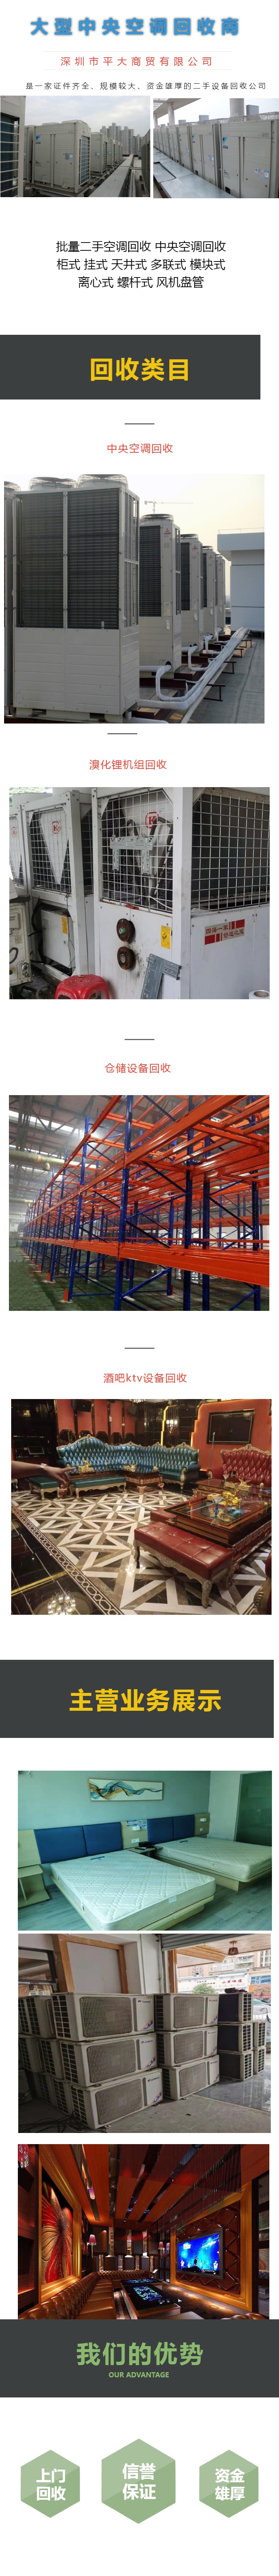 深圳回收二手空调 回收废旧空调 龙岗回收中央空调制冷设备